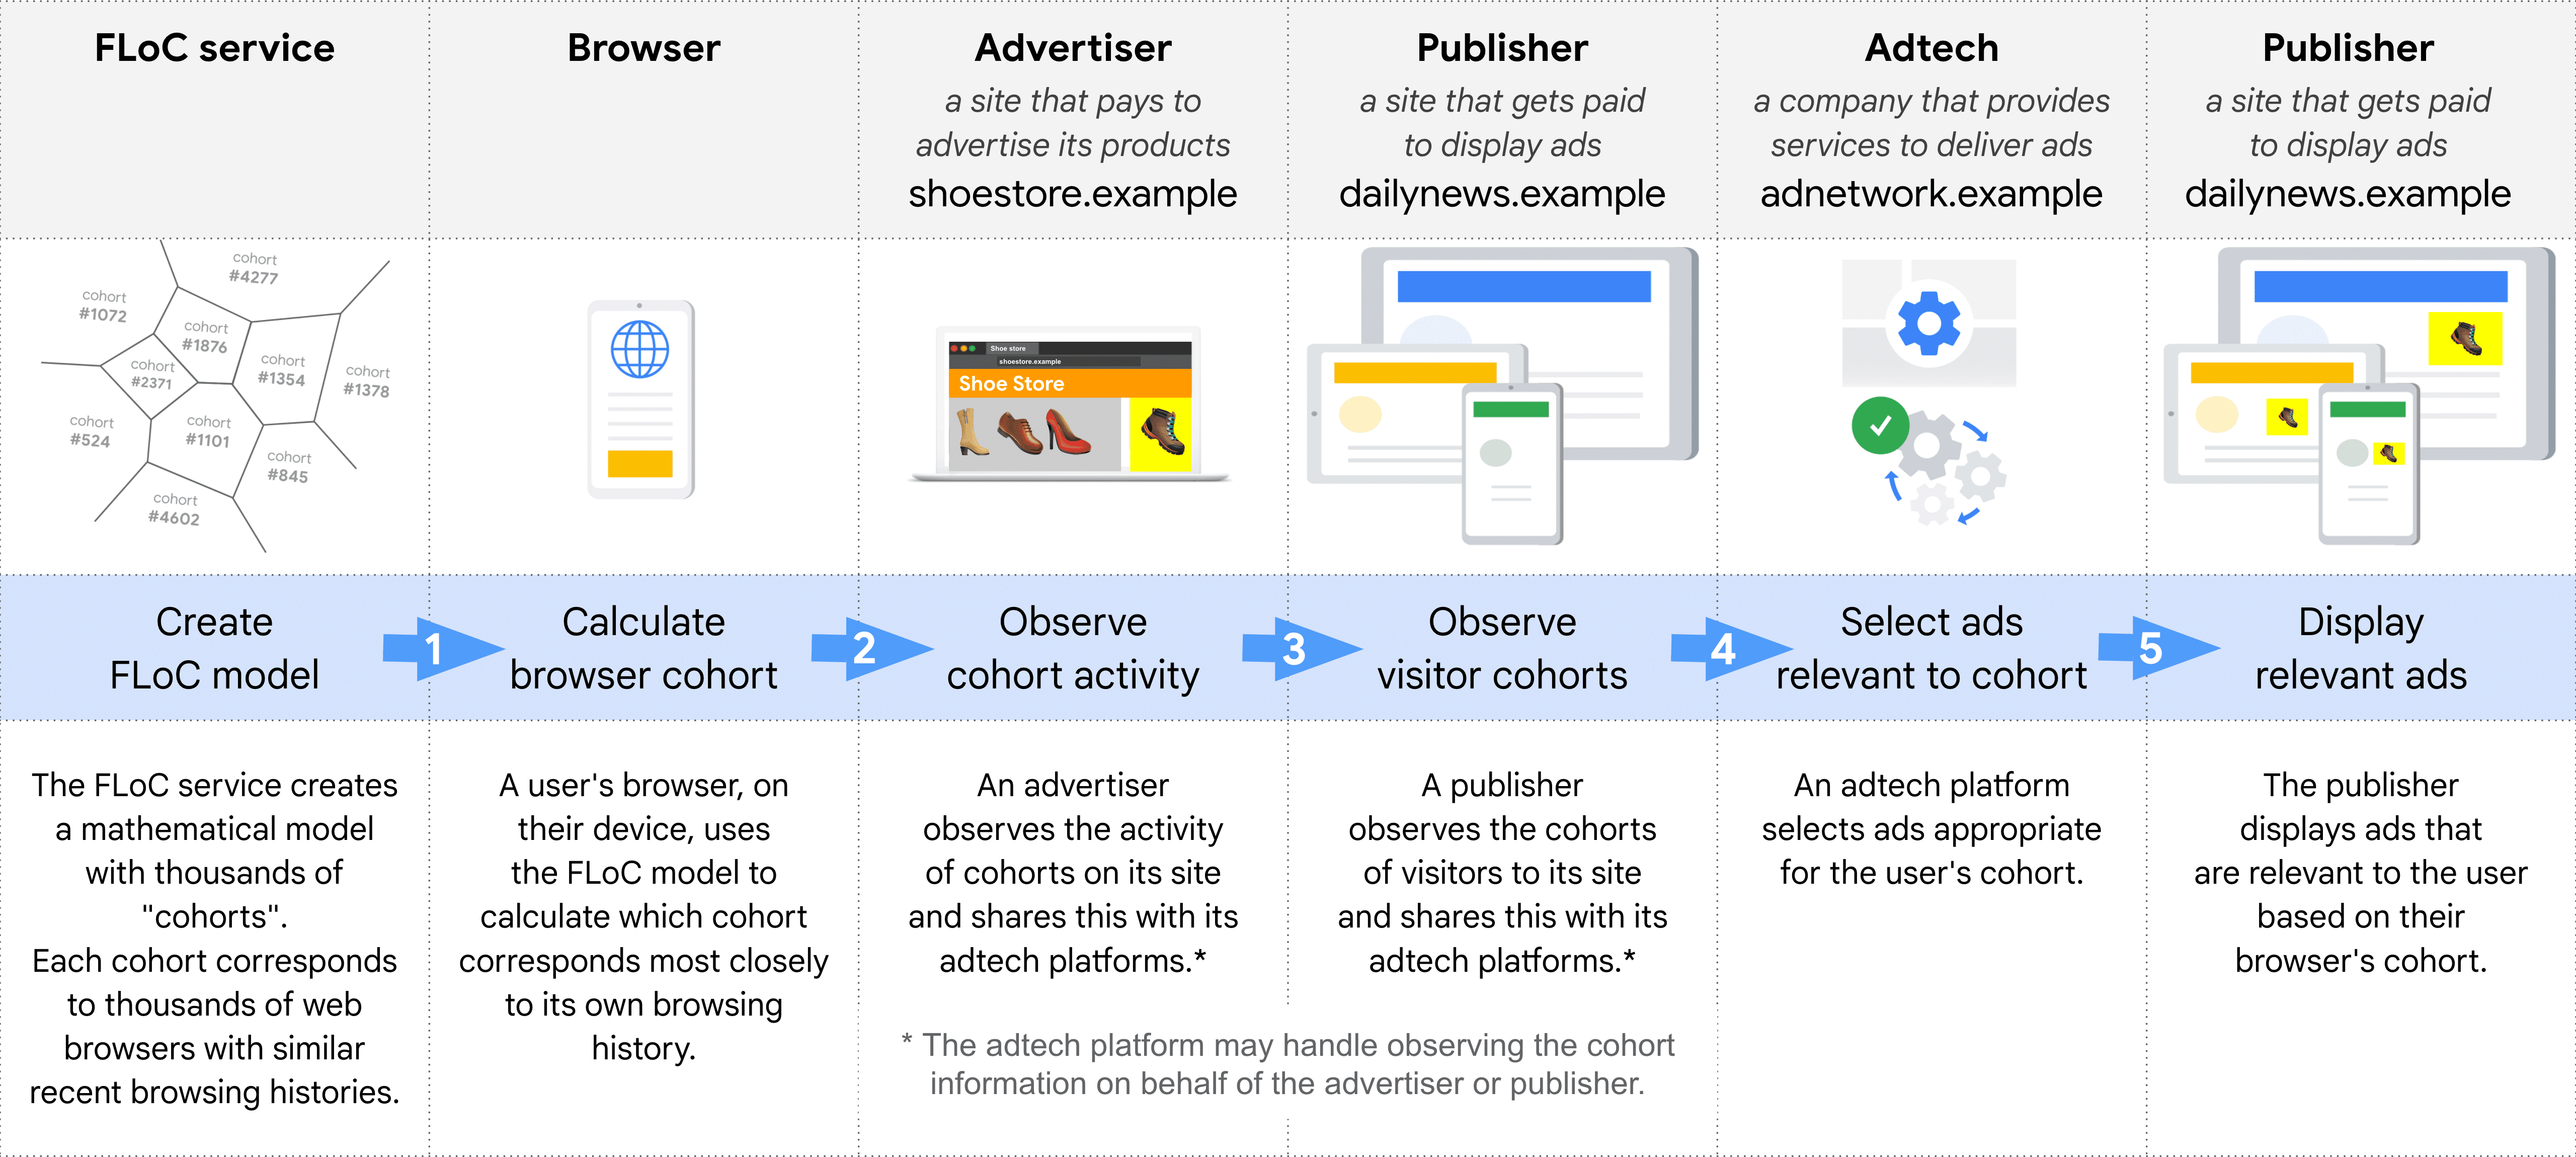 Schemat przedstawiający krok po kroku różne role w wybieraniu i wyświetlaniu reklamy za pomocą FLoC: usługa FLoC, przeglądarka, reklamodawcy, wydawca (aby obserwować kohorty), Adtech i wydawca (do wyświetlania reklam).